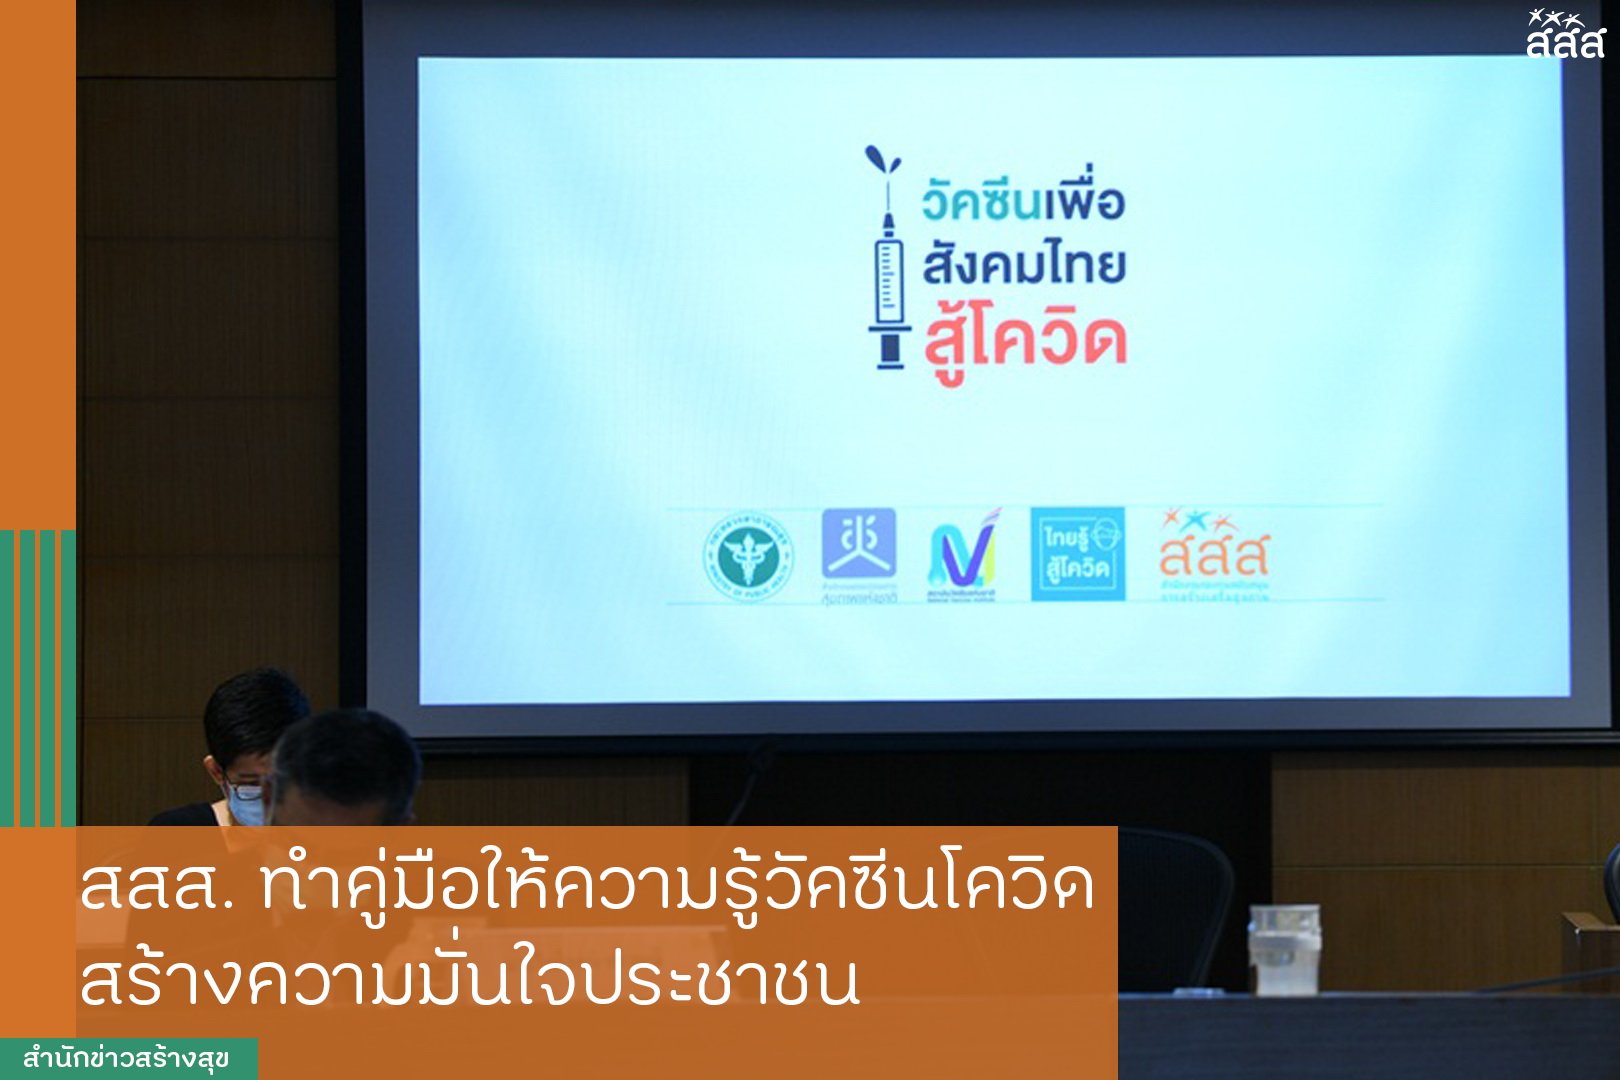 สสส.ทำคู่มือให้ความรู้วัคซีนโควิด สร้างความมั่นใจประชาชน thaihealth